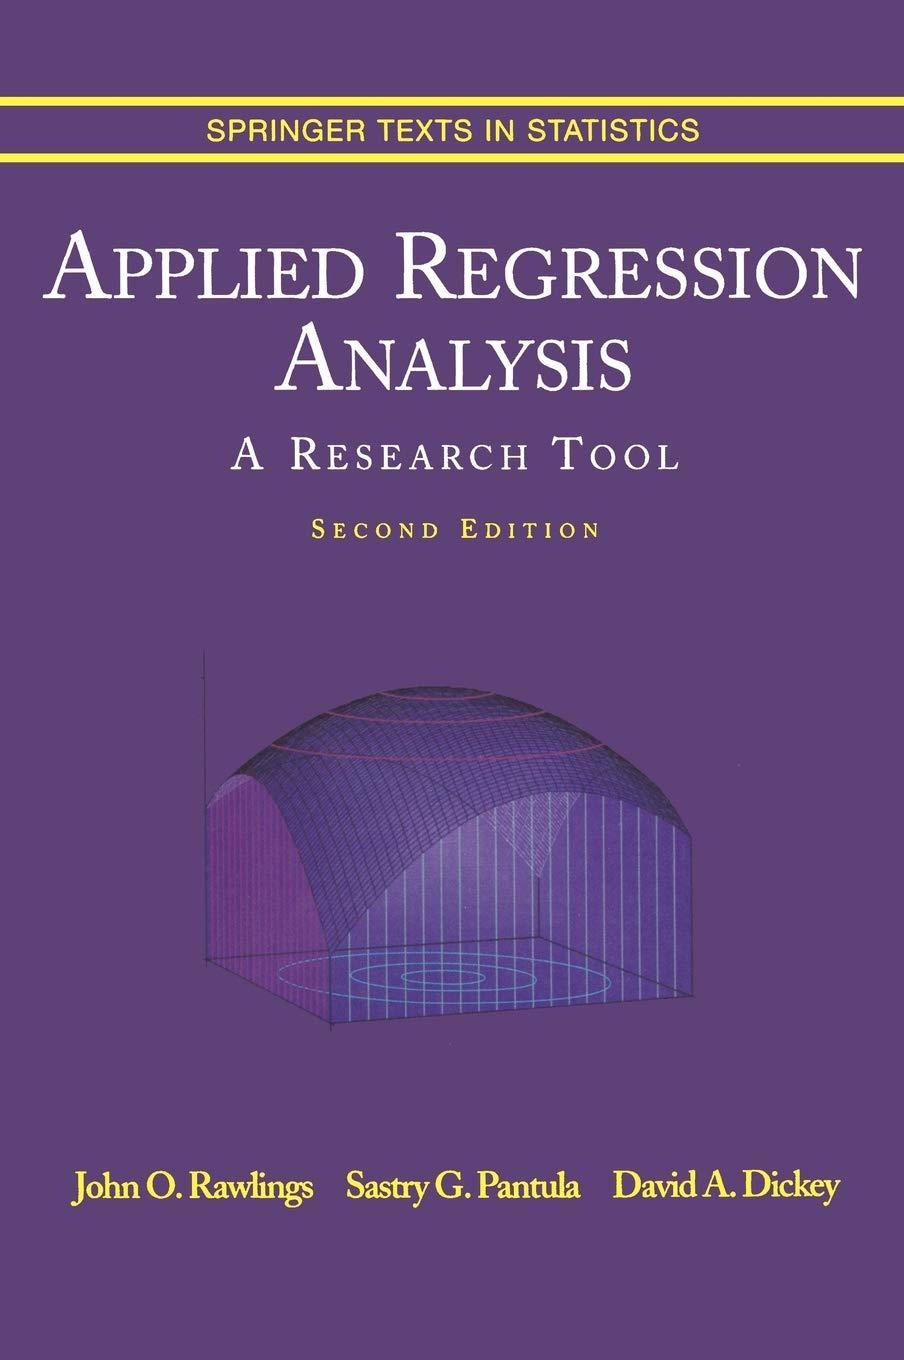 applied regression analysis 2nd edition john o. rawlings, sastry g. pantula, david a. dickey 0387984542,